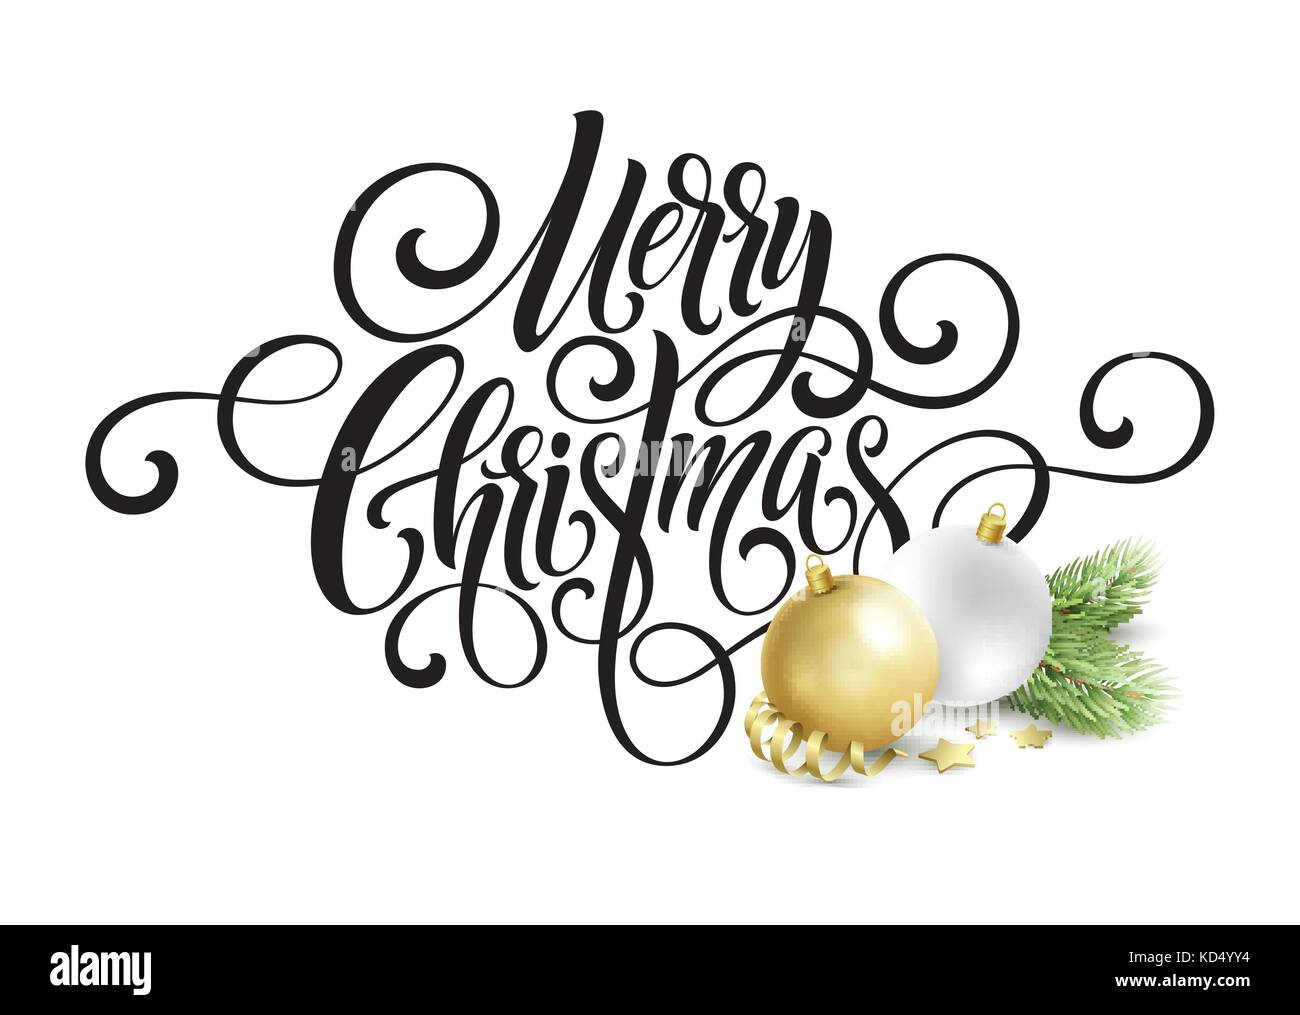 Frohe Weihnachten Handschrift Skript Schriftzug. gruß Hintergrund mit einem Weihnachtsbaum und Dekorationen. Vector Illustration Stock Vektor